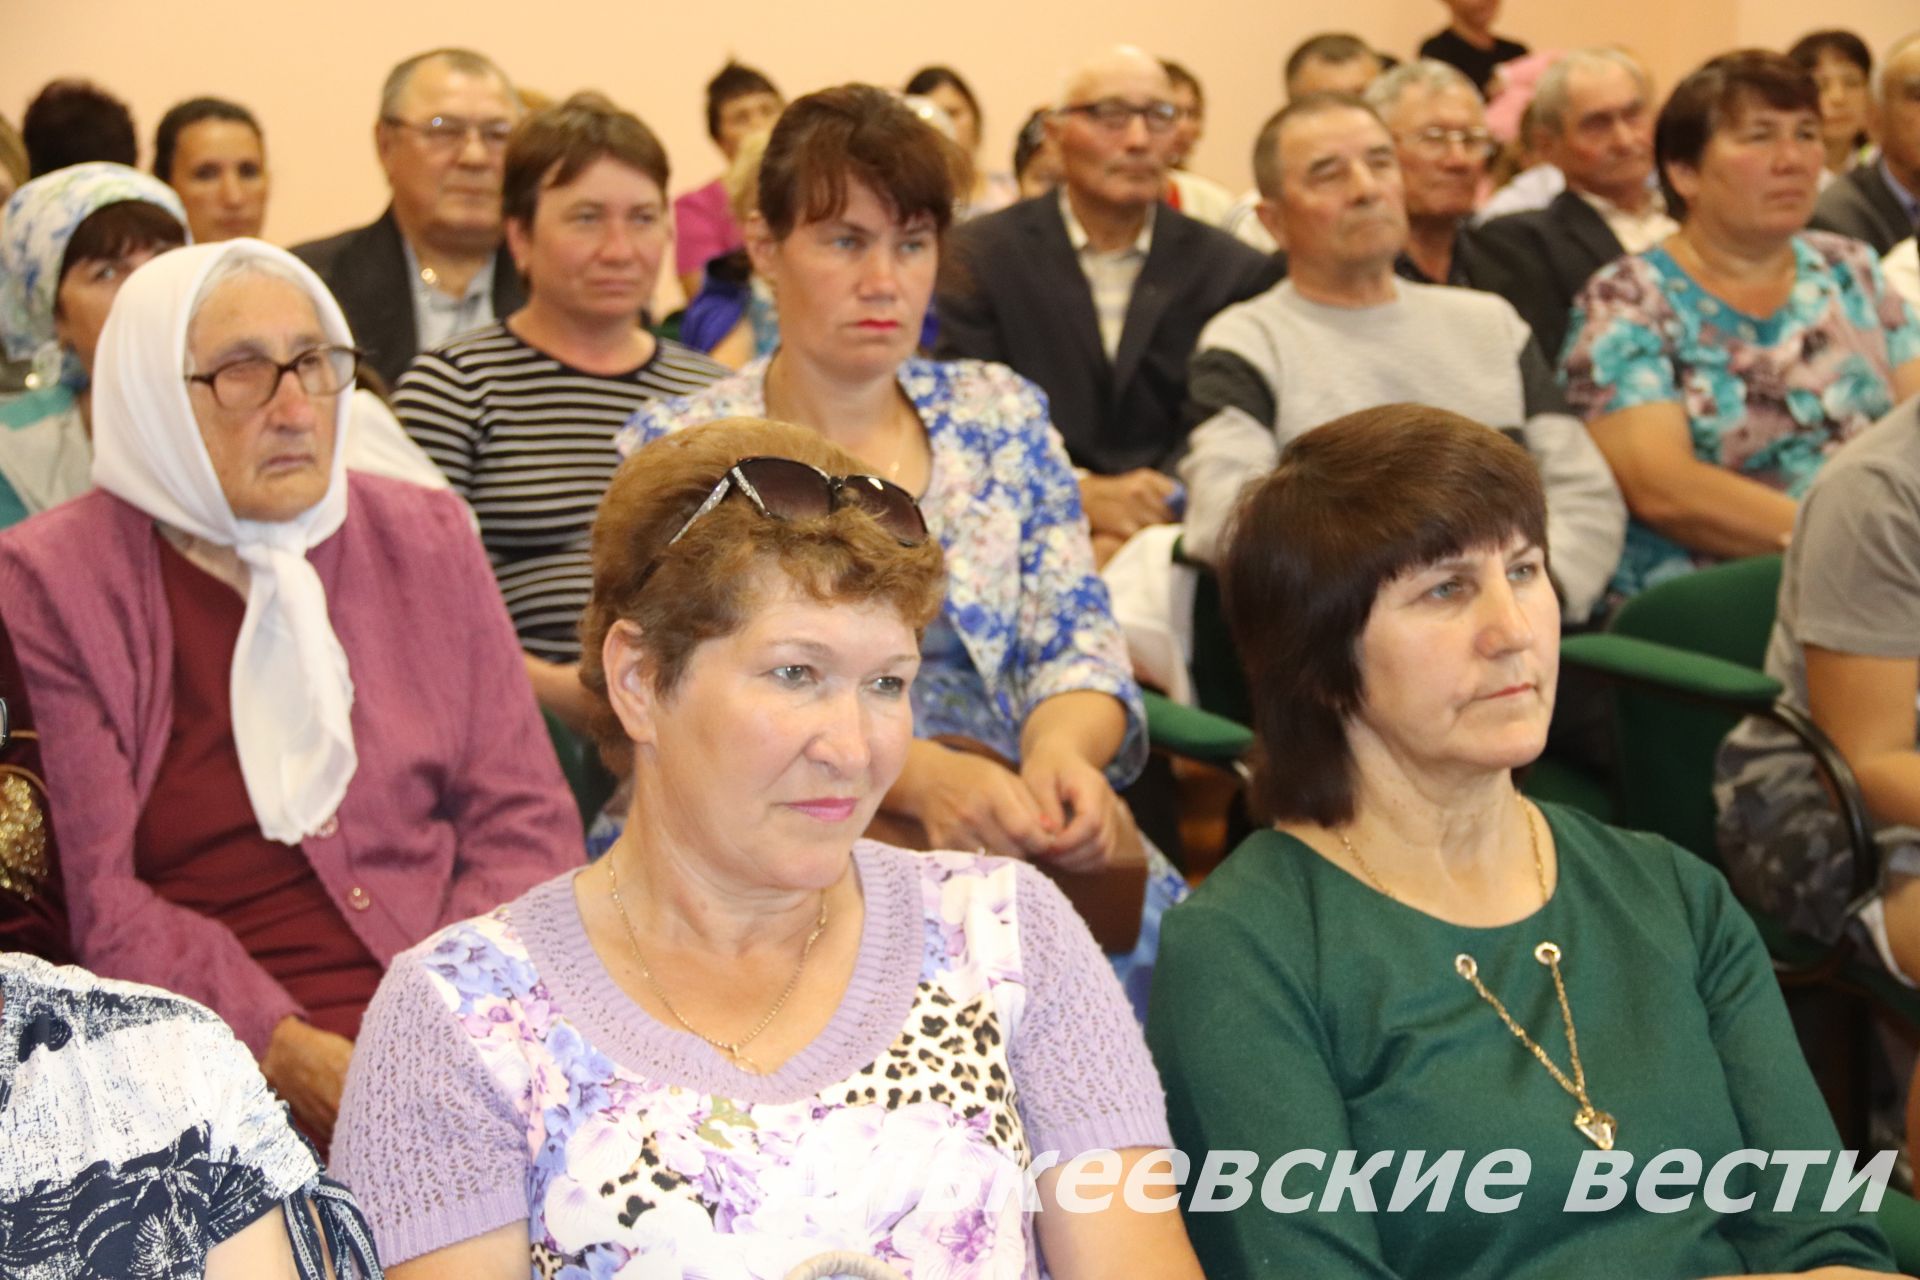 В деревне Верхнее Алькеево Алькеевского района состоялось торжественное открытие клуба